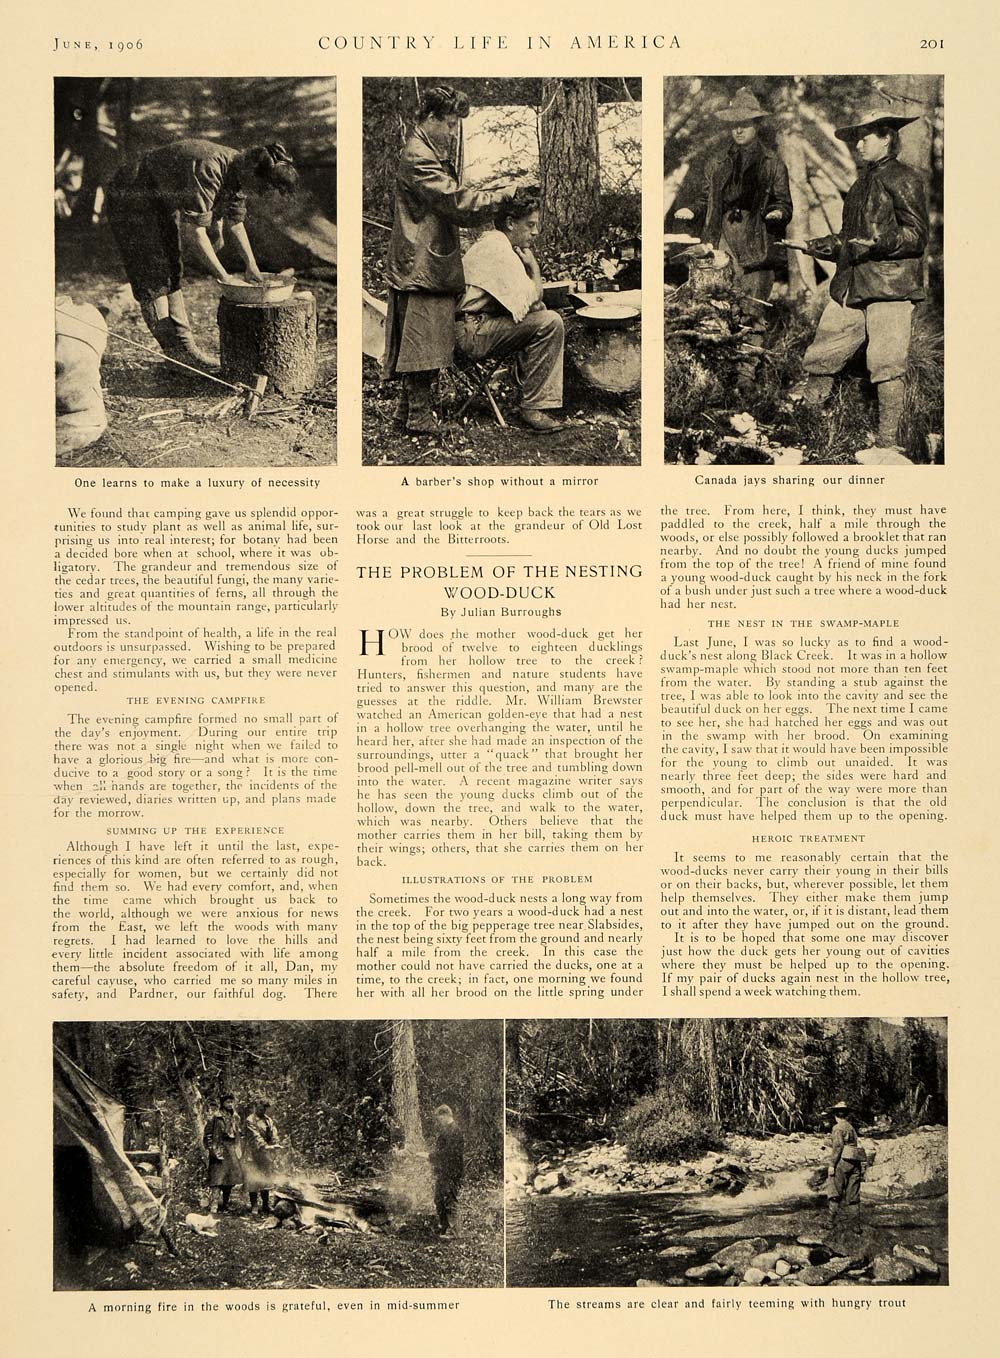 1906 Article Bitterfoot Range Idaho Camping Excursion Rock Climbing Moose CLA1